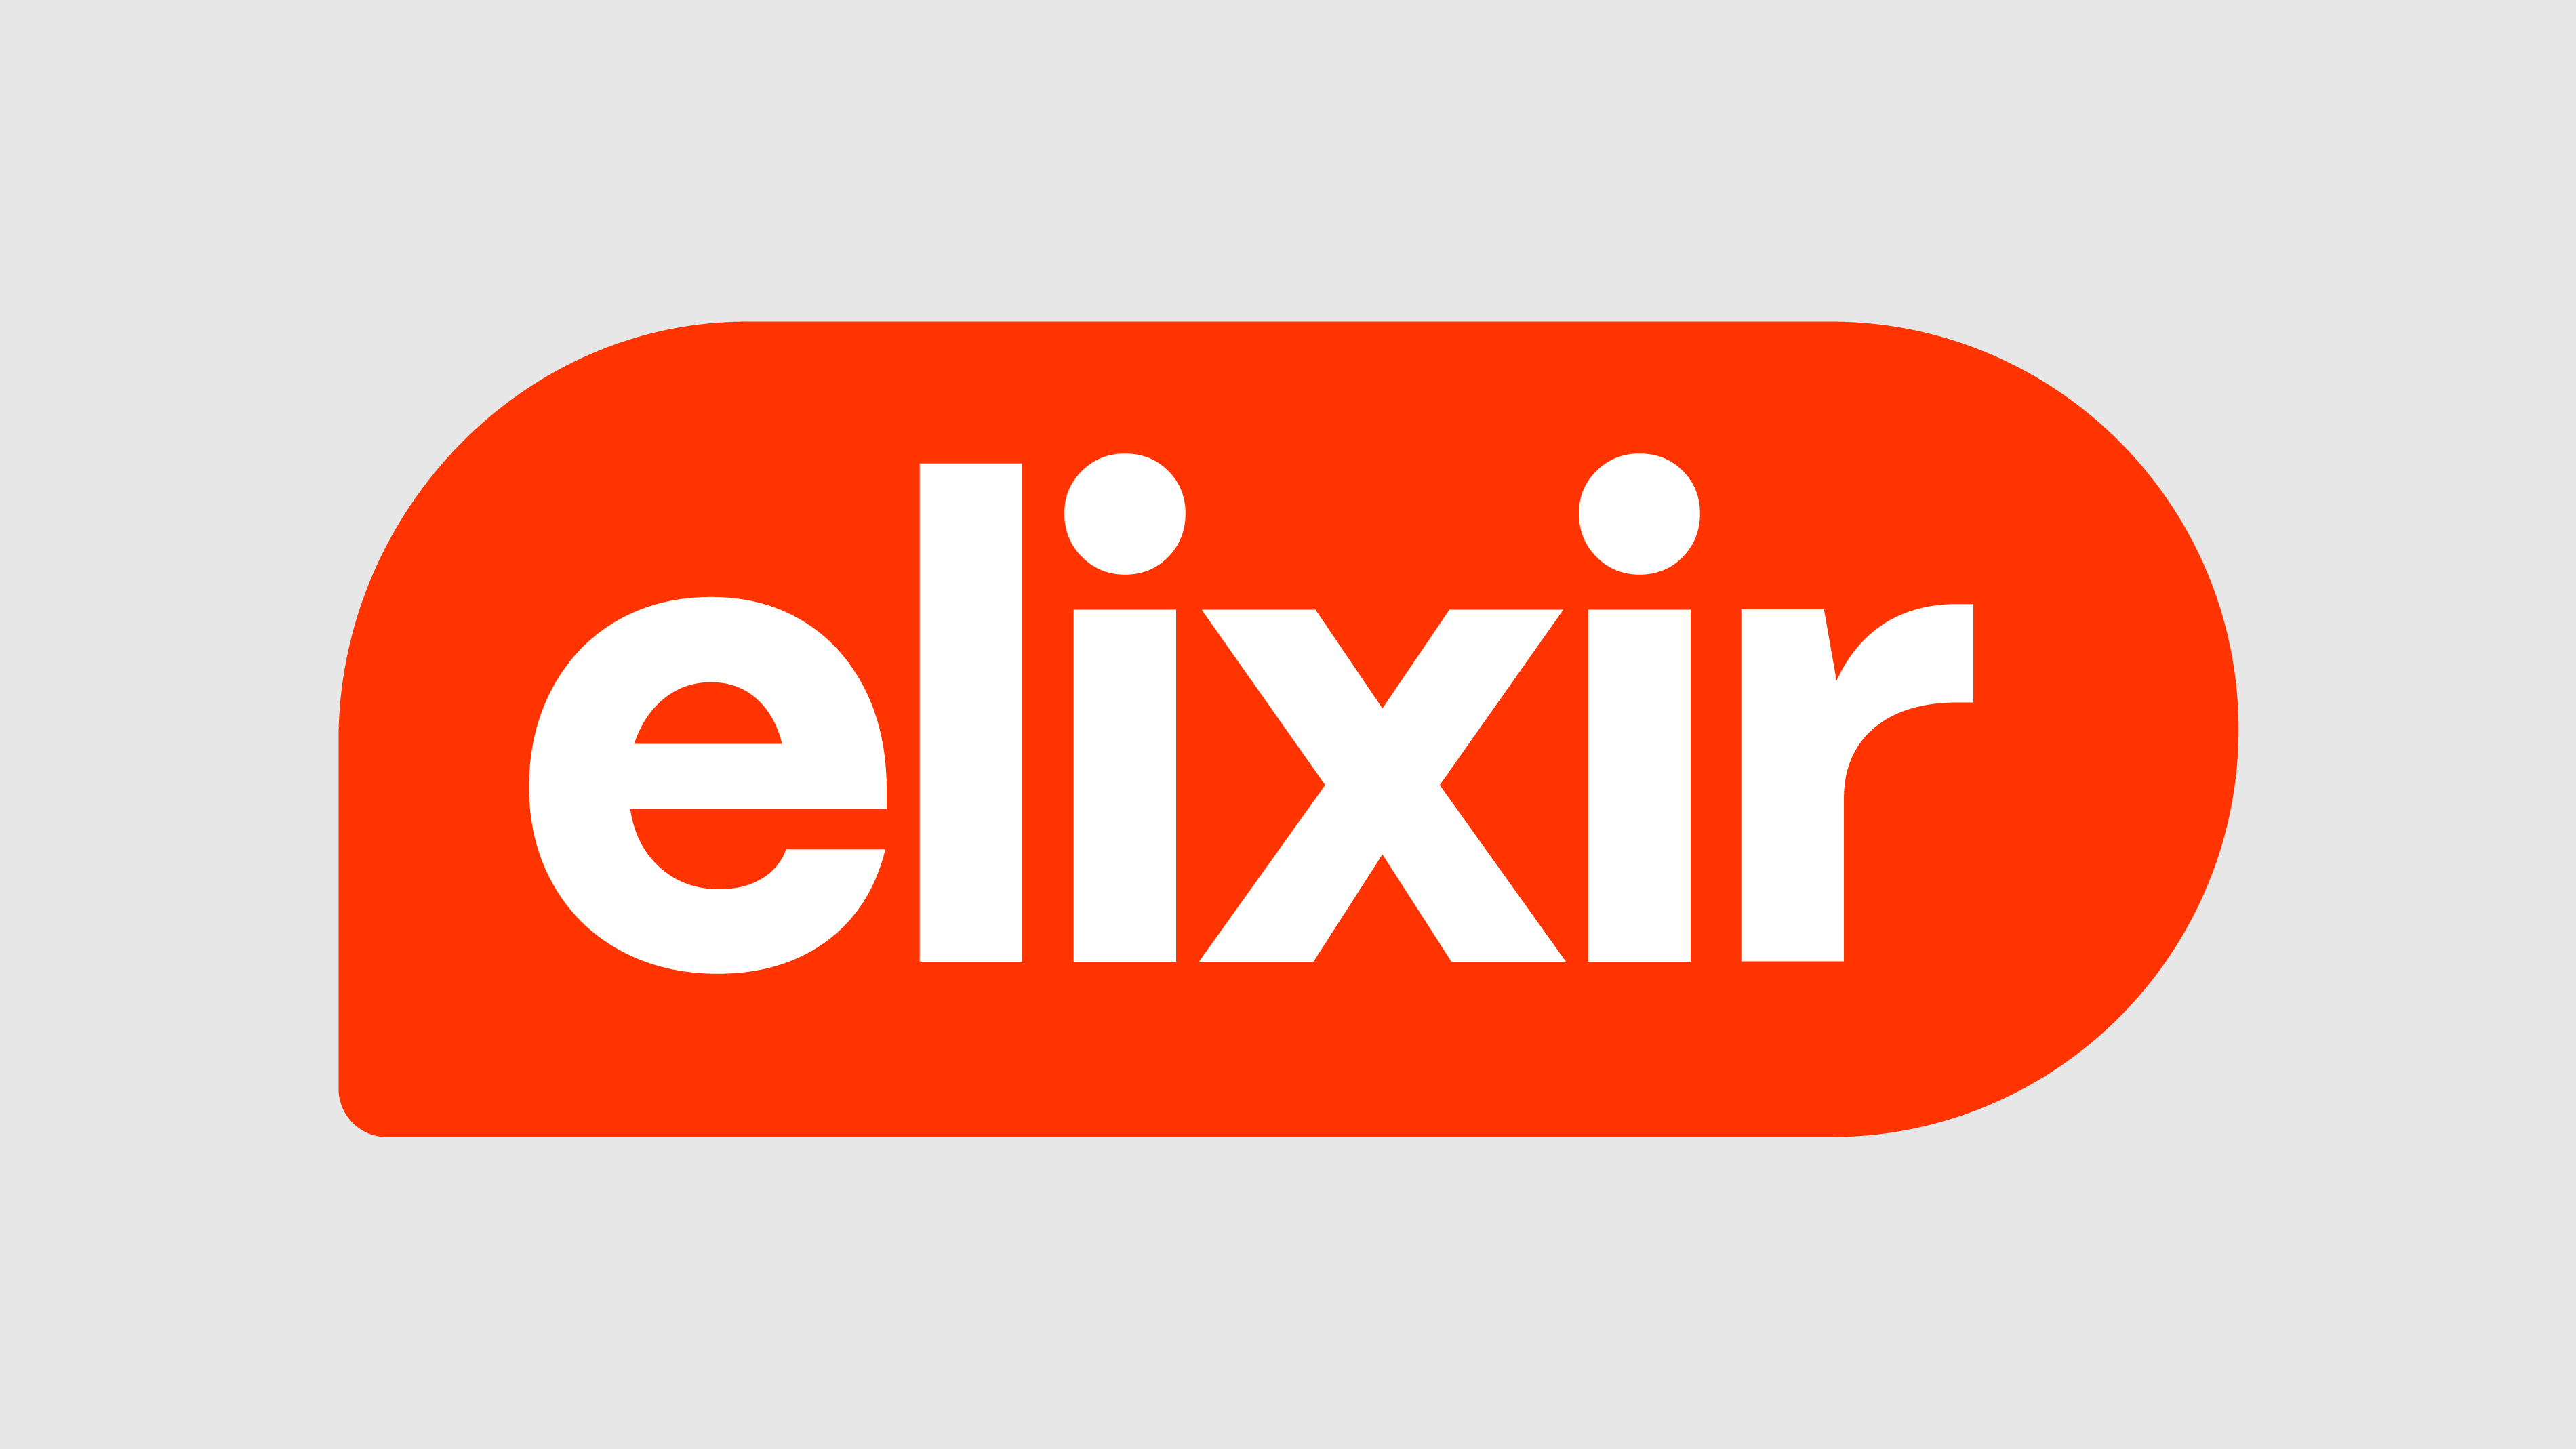 identity-04-elixir-3800